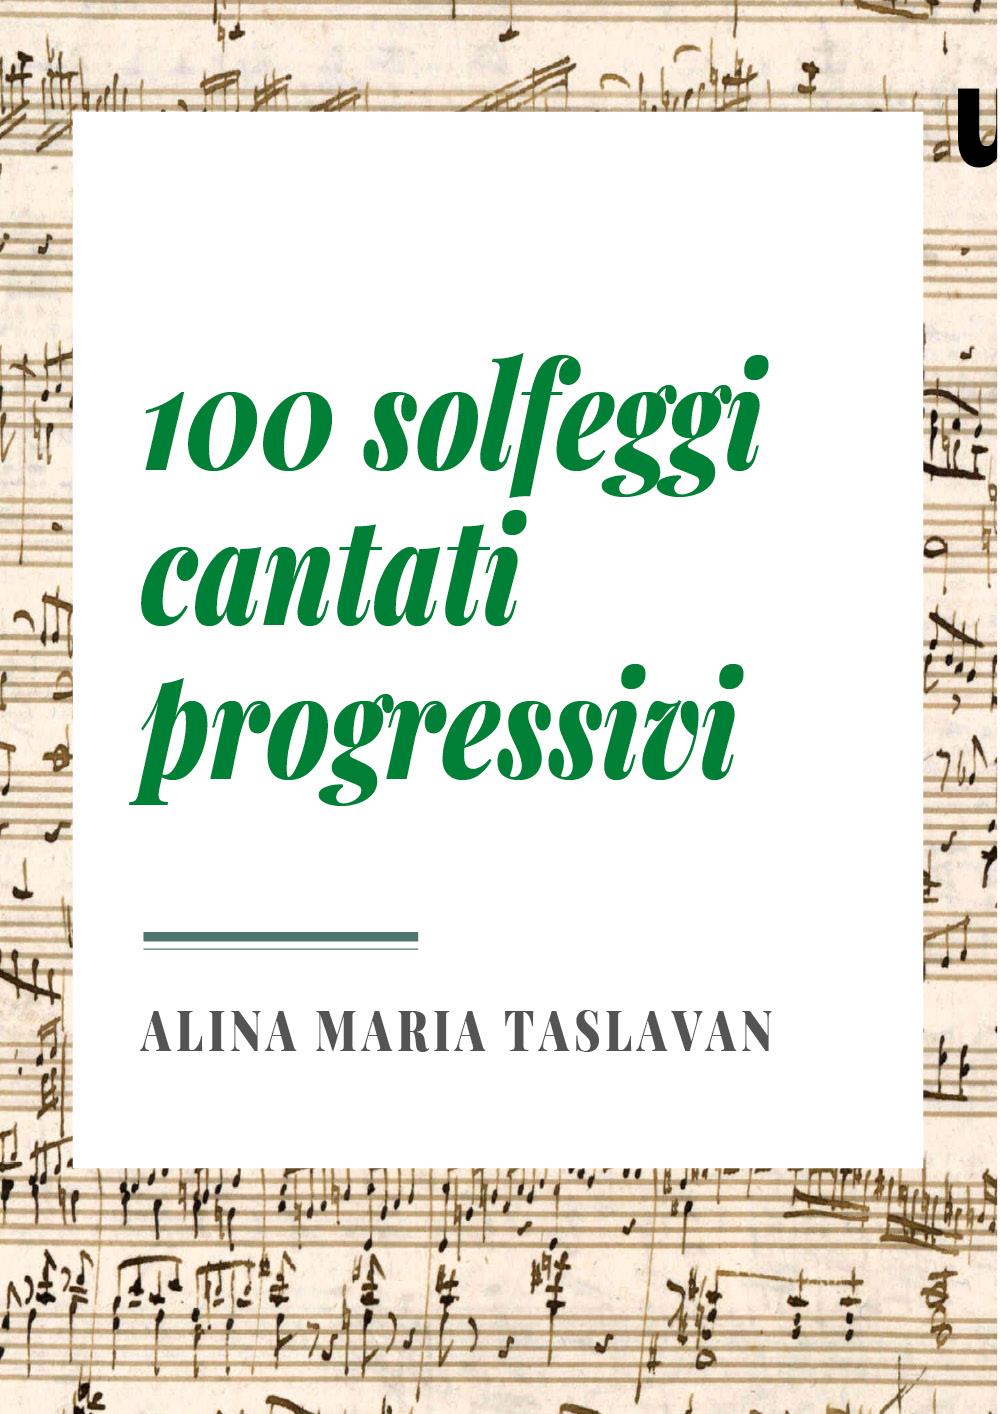 100 solfeggi cantati progressivi